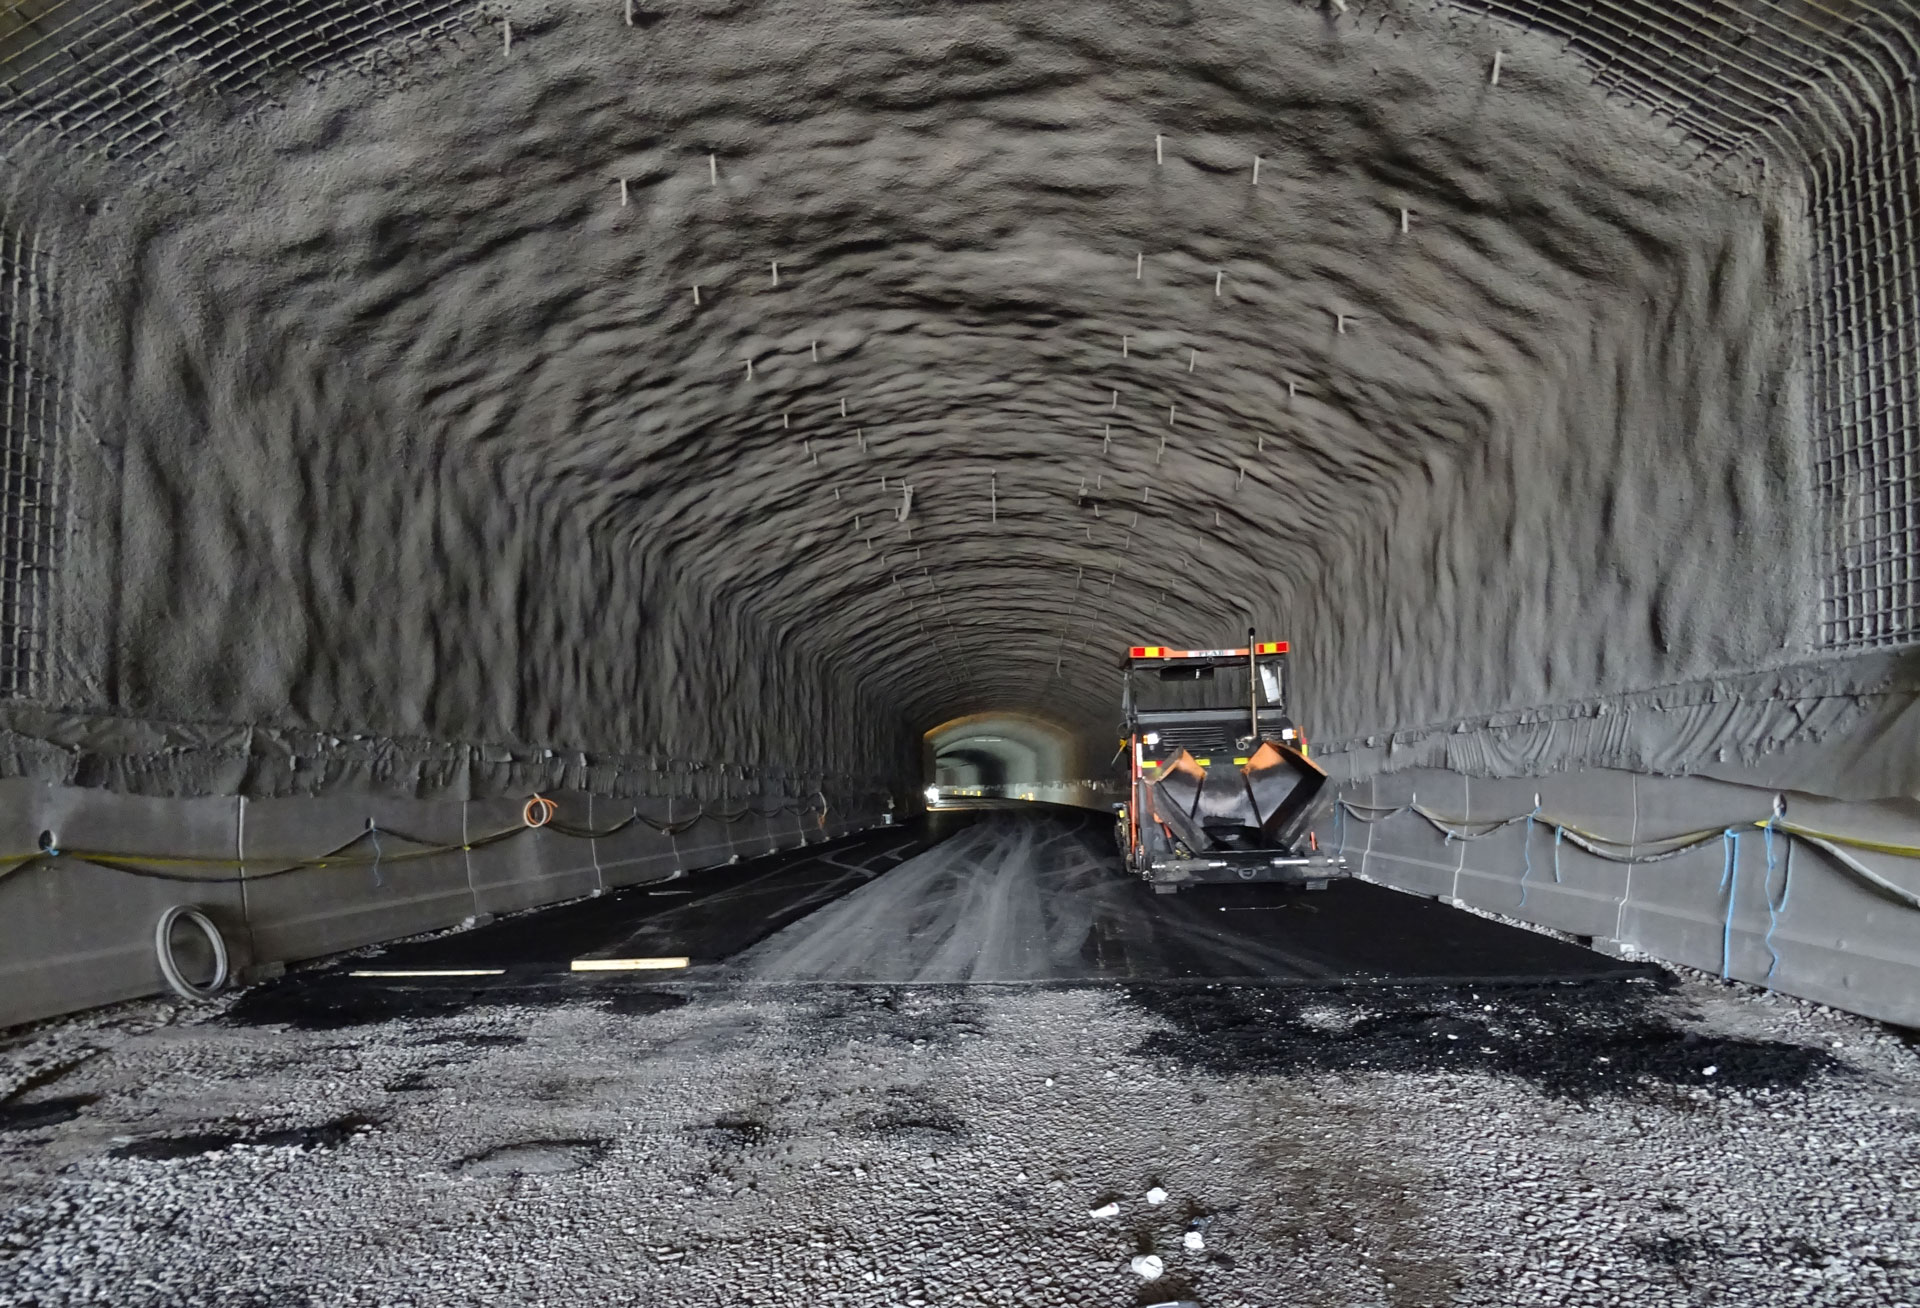 Liipolan betonirakenteinen tunneli on raudoitettu ja ruiskubetonoitu, kuten kalliotunneli. Kuva: Antti Rytkönen / Väylä